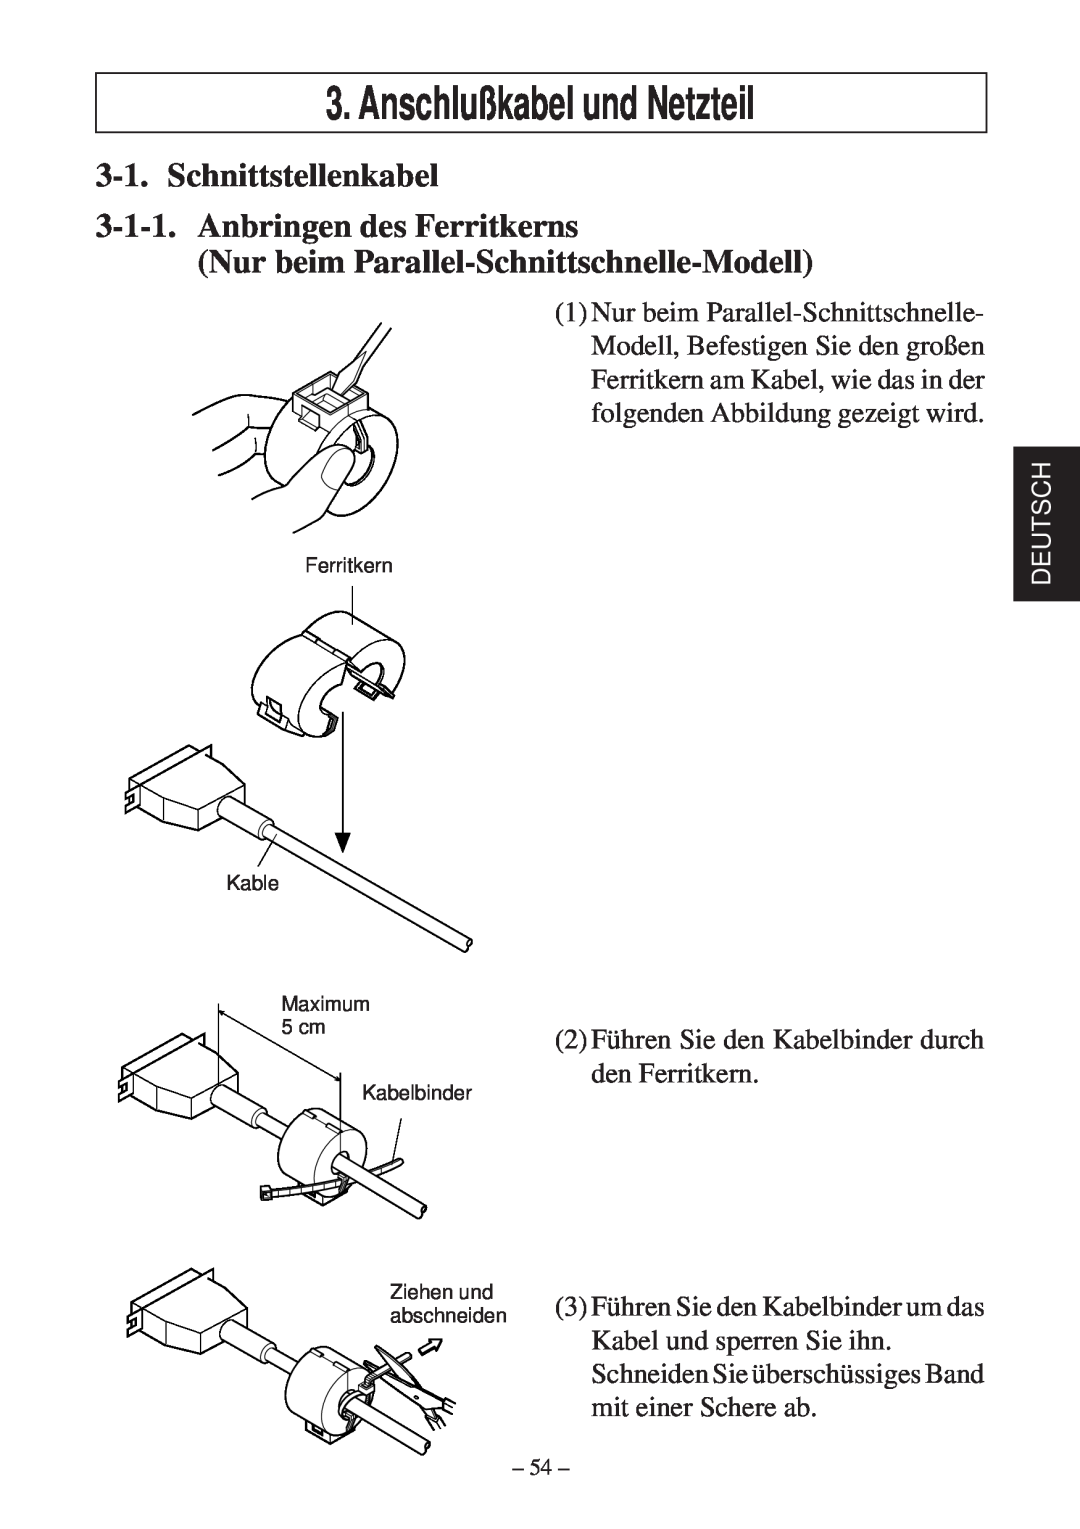 Star Micronics TSP600 user manual Anschlußkabel und Netzteil, Schnittstellenkabel 3-1-1. Anbringen des Ferritkerns, Deutsch 